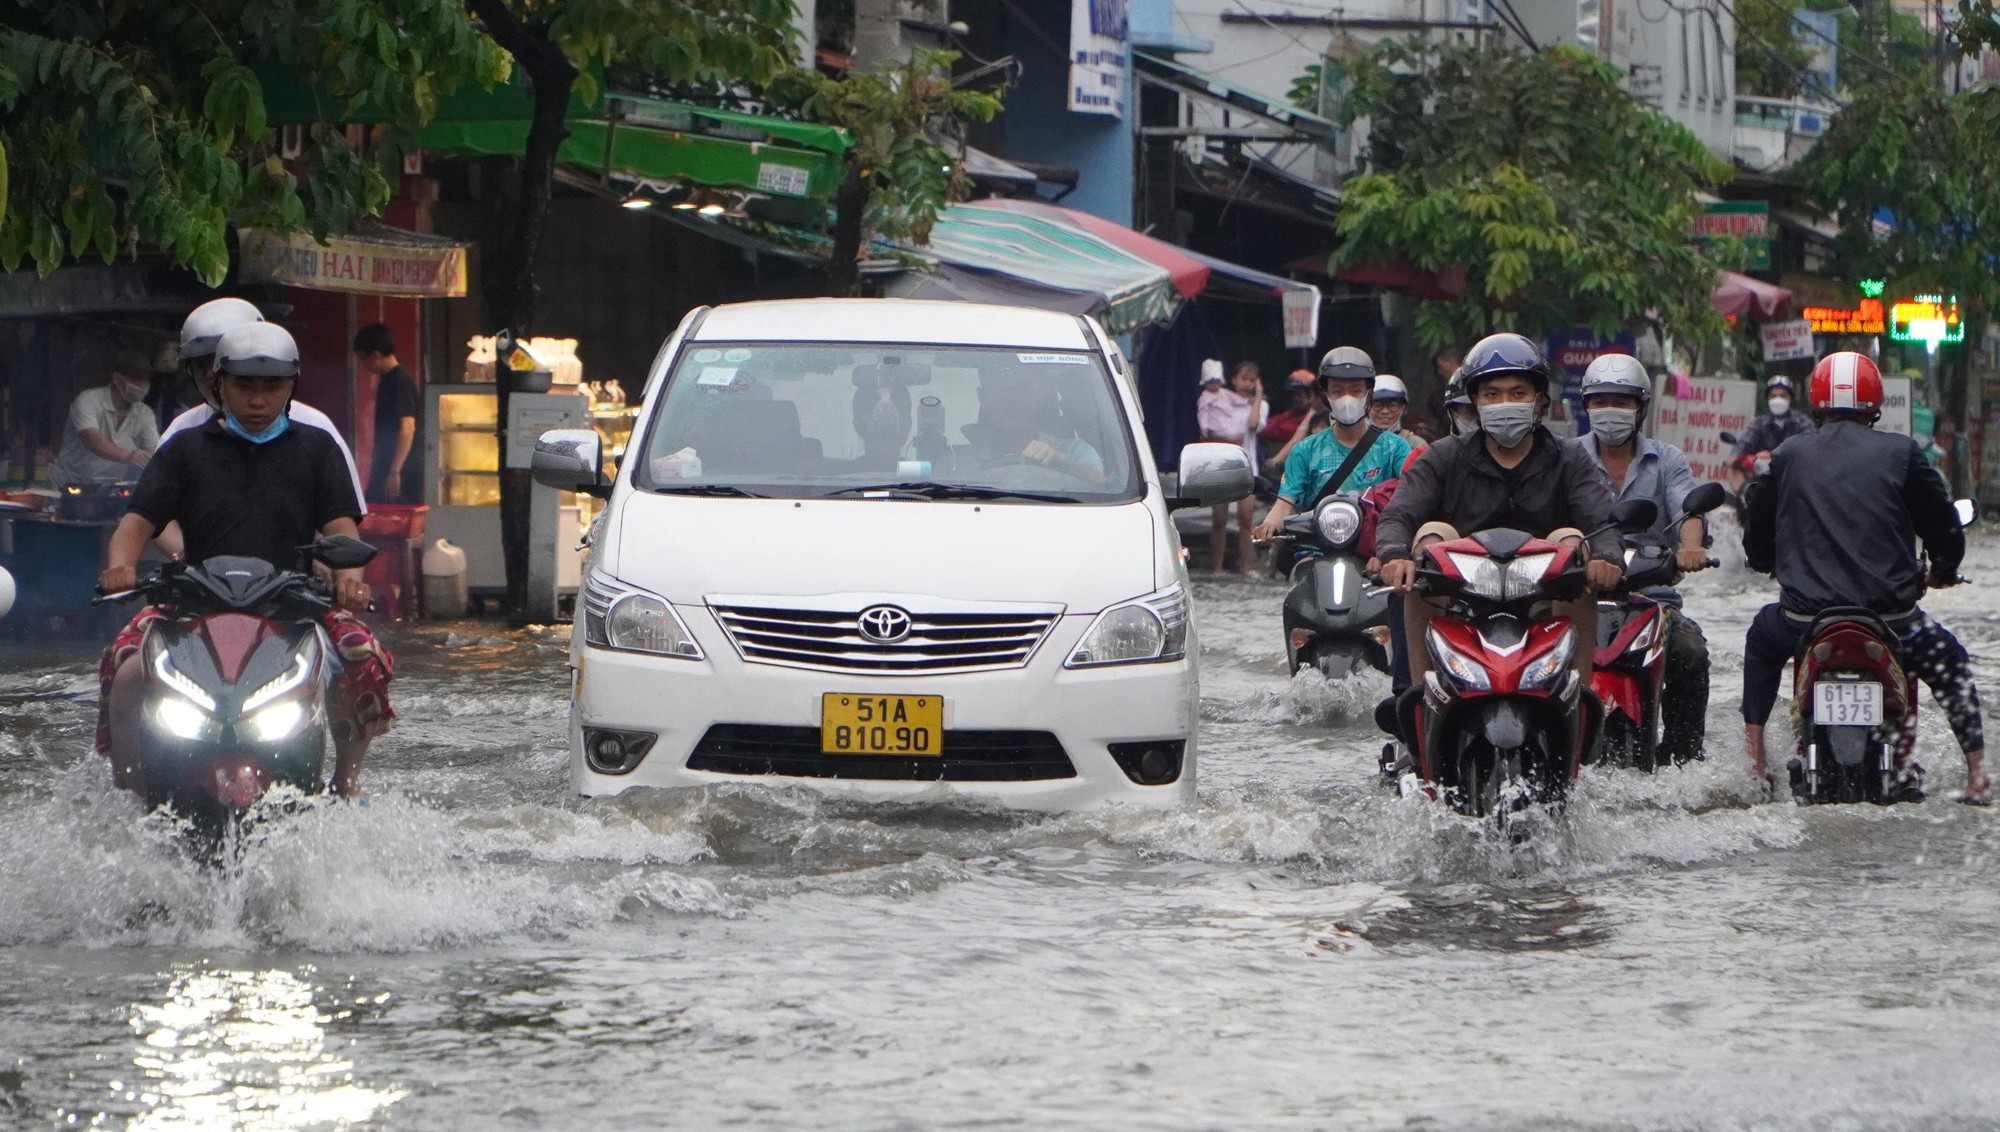 Loạt ảnh người dân TP HCM hì hục dắt xe qua đoạn đường ngập ngày triều cường dâng cao - Ảnh 2.